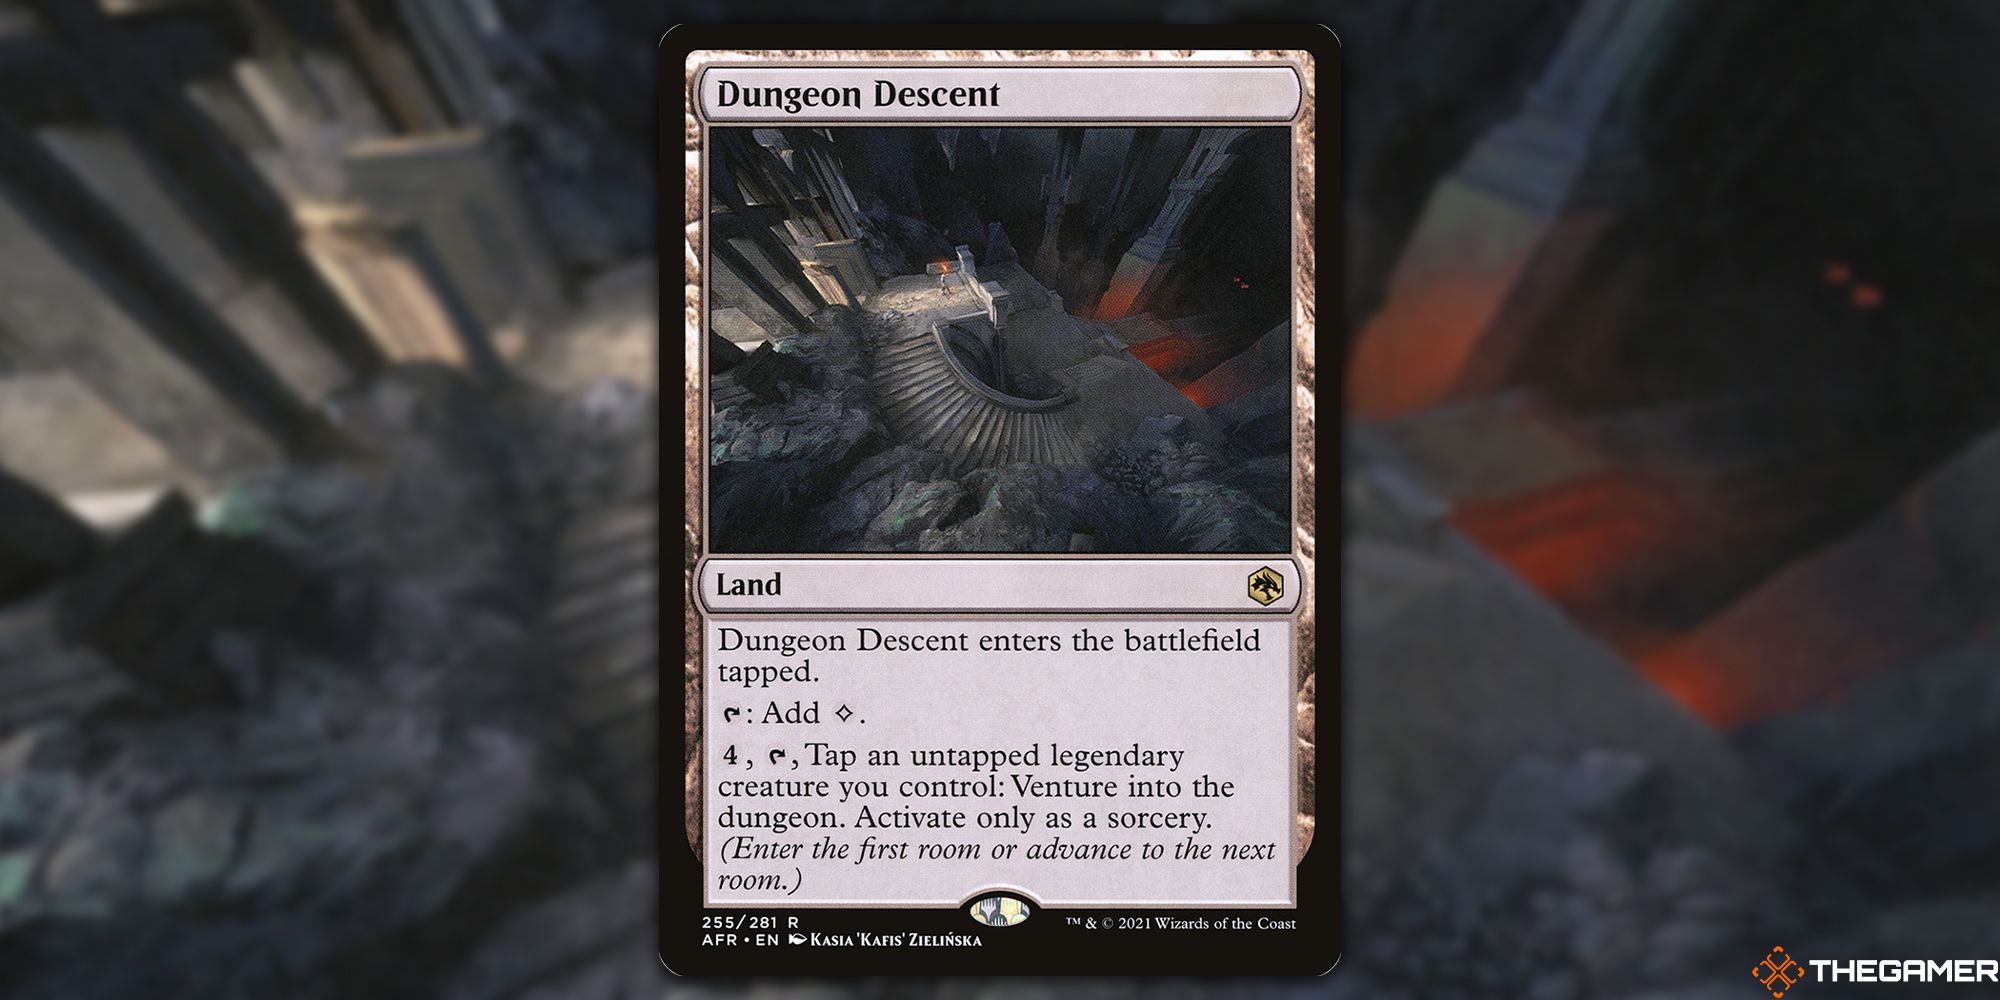 Dungeon Descent